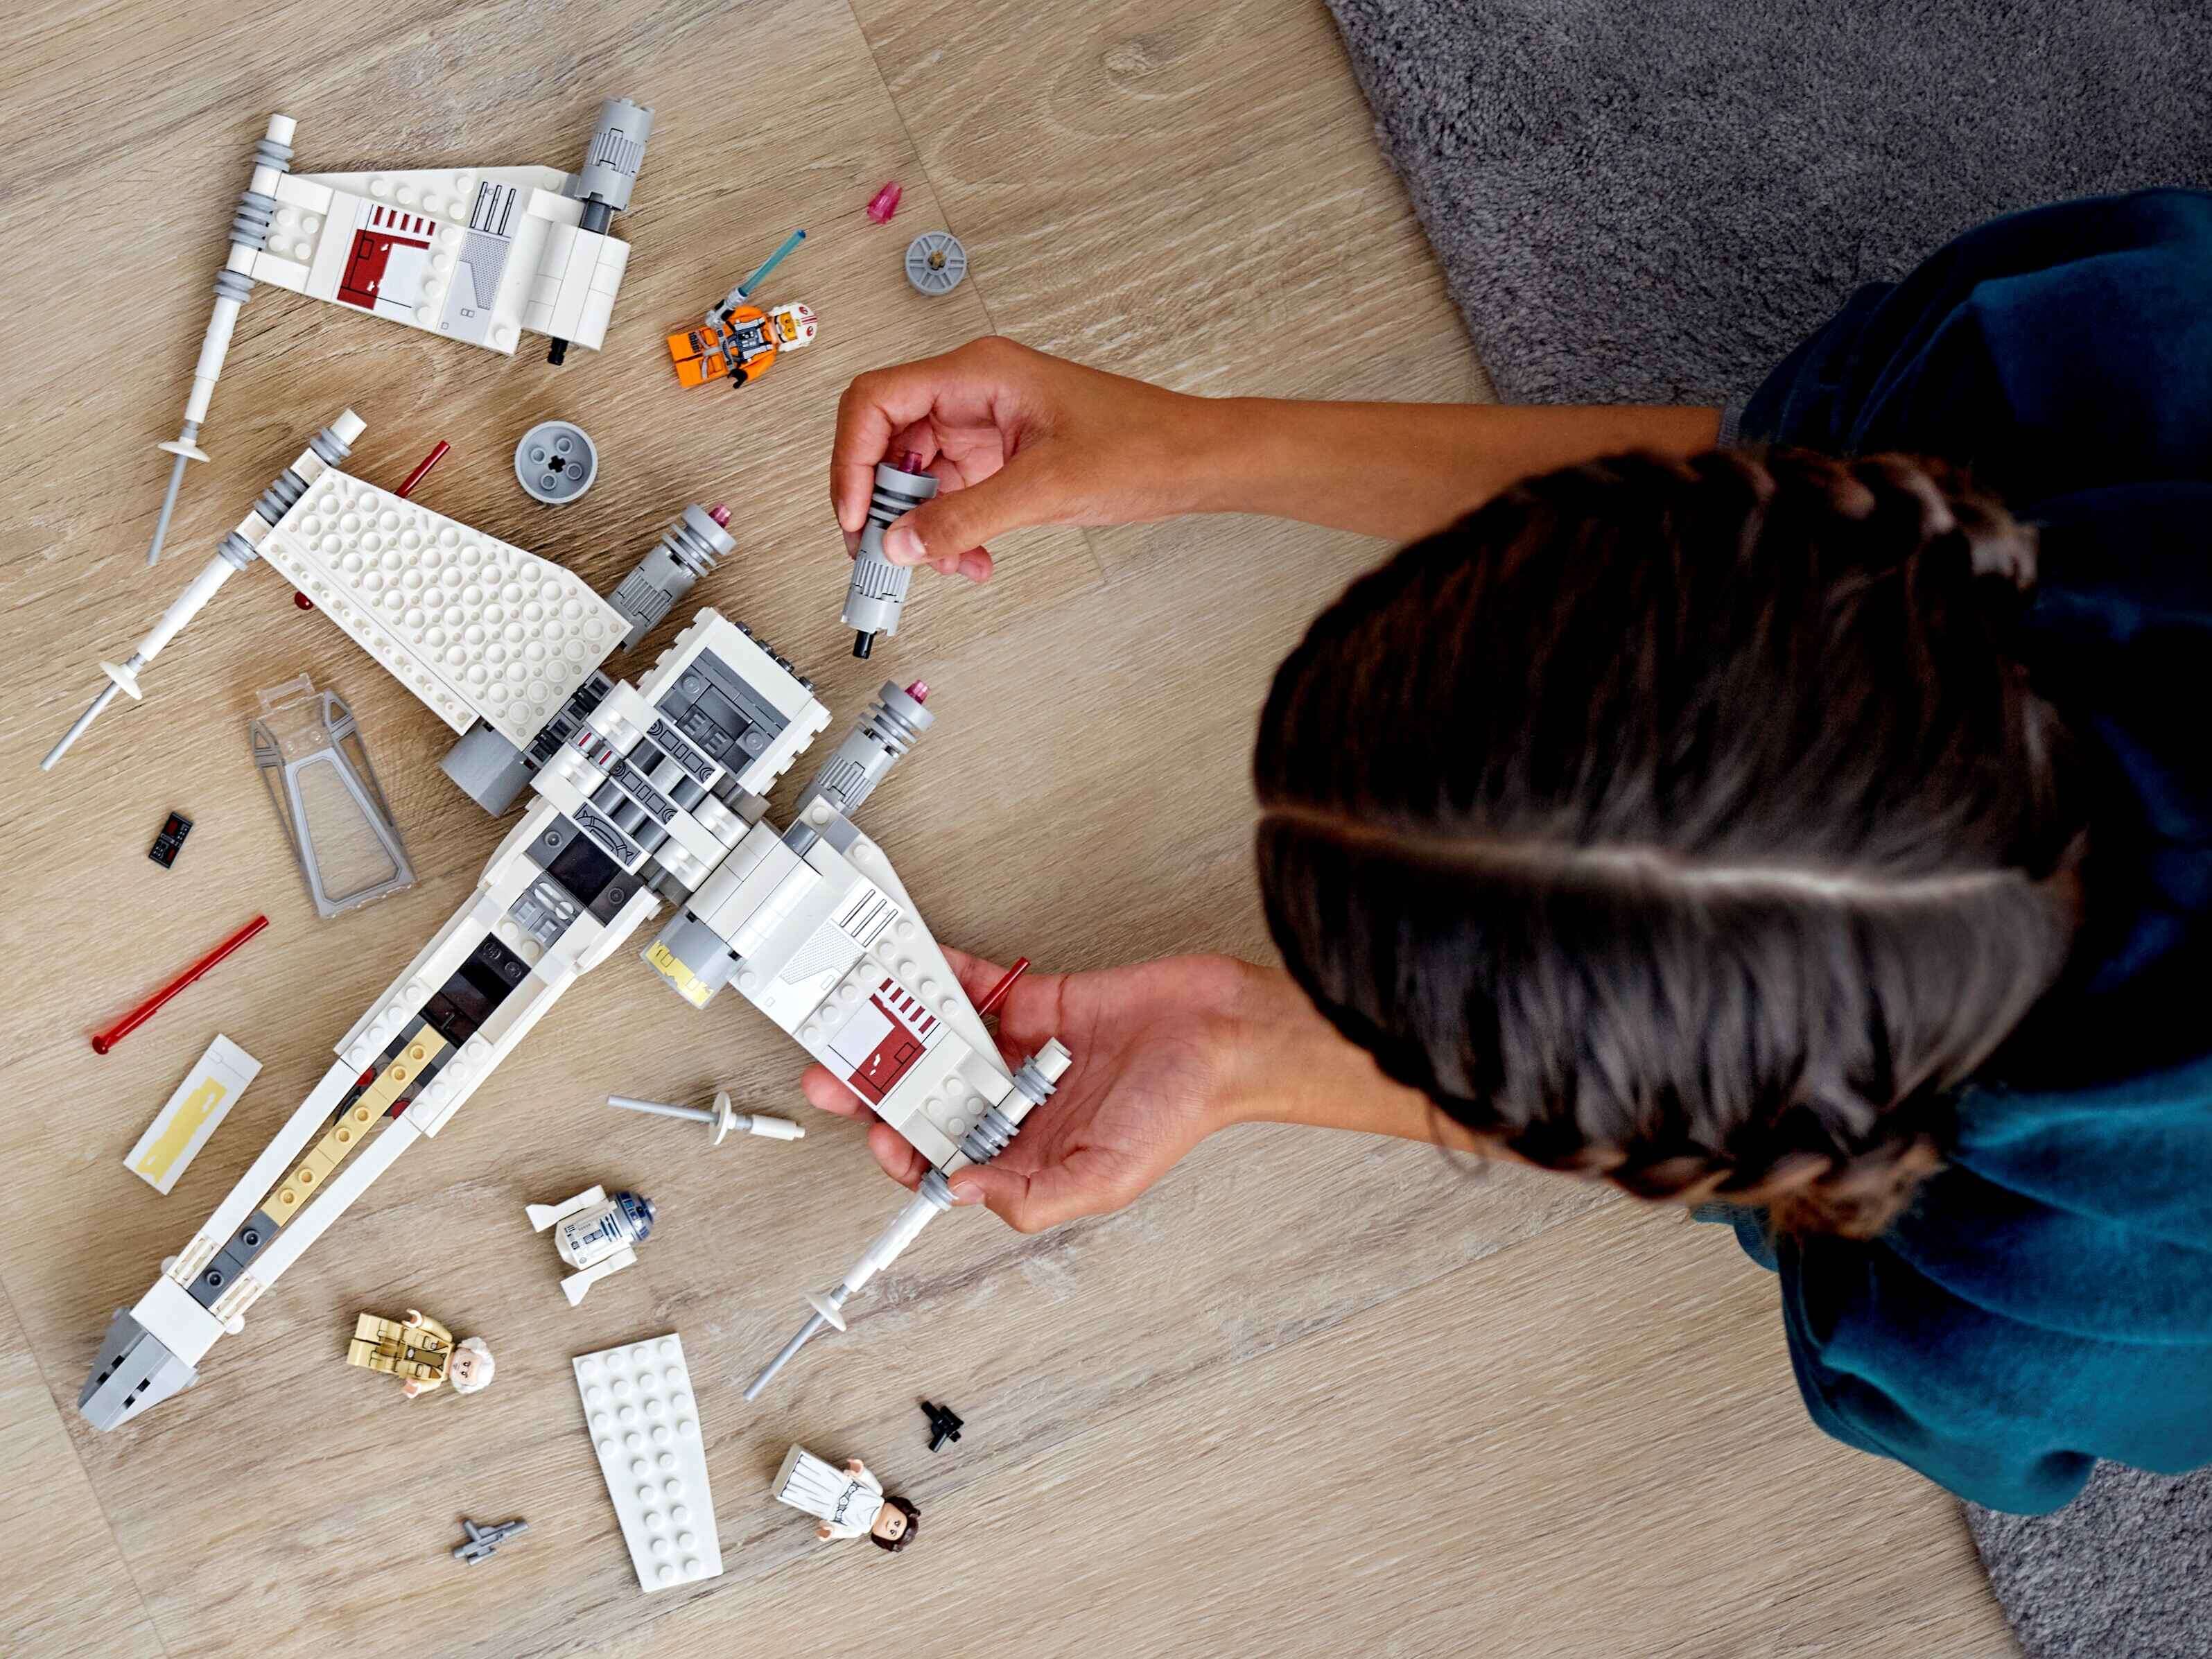 LEGO 75301 Star Wars Luke Skywalkers X-Wing Fighter, 3 Minifiguren, R2-D2